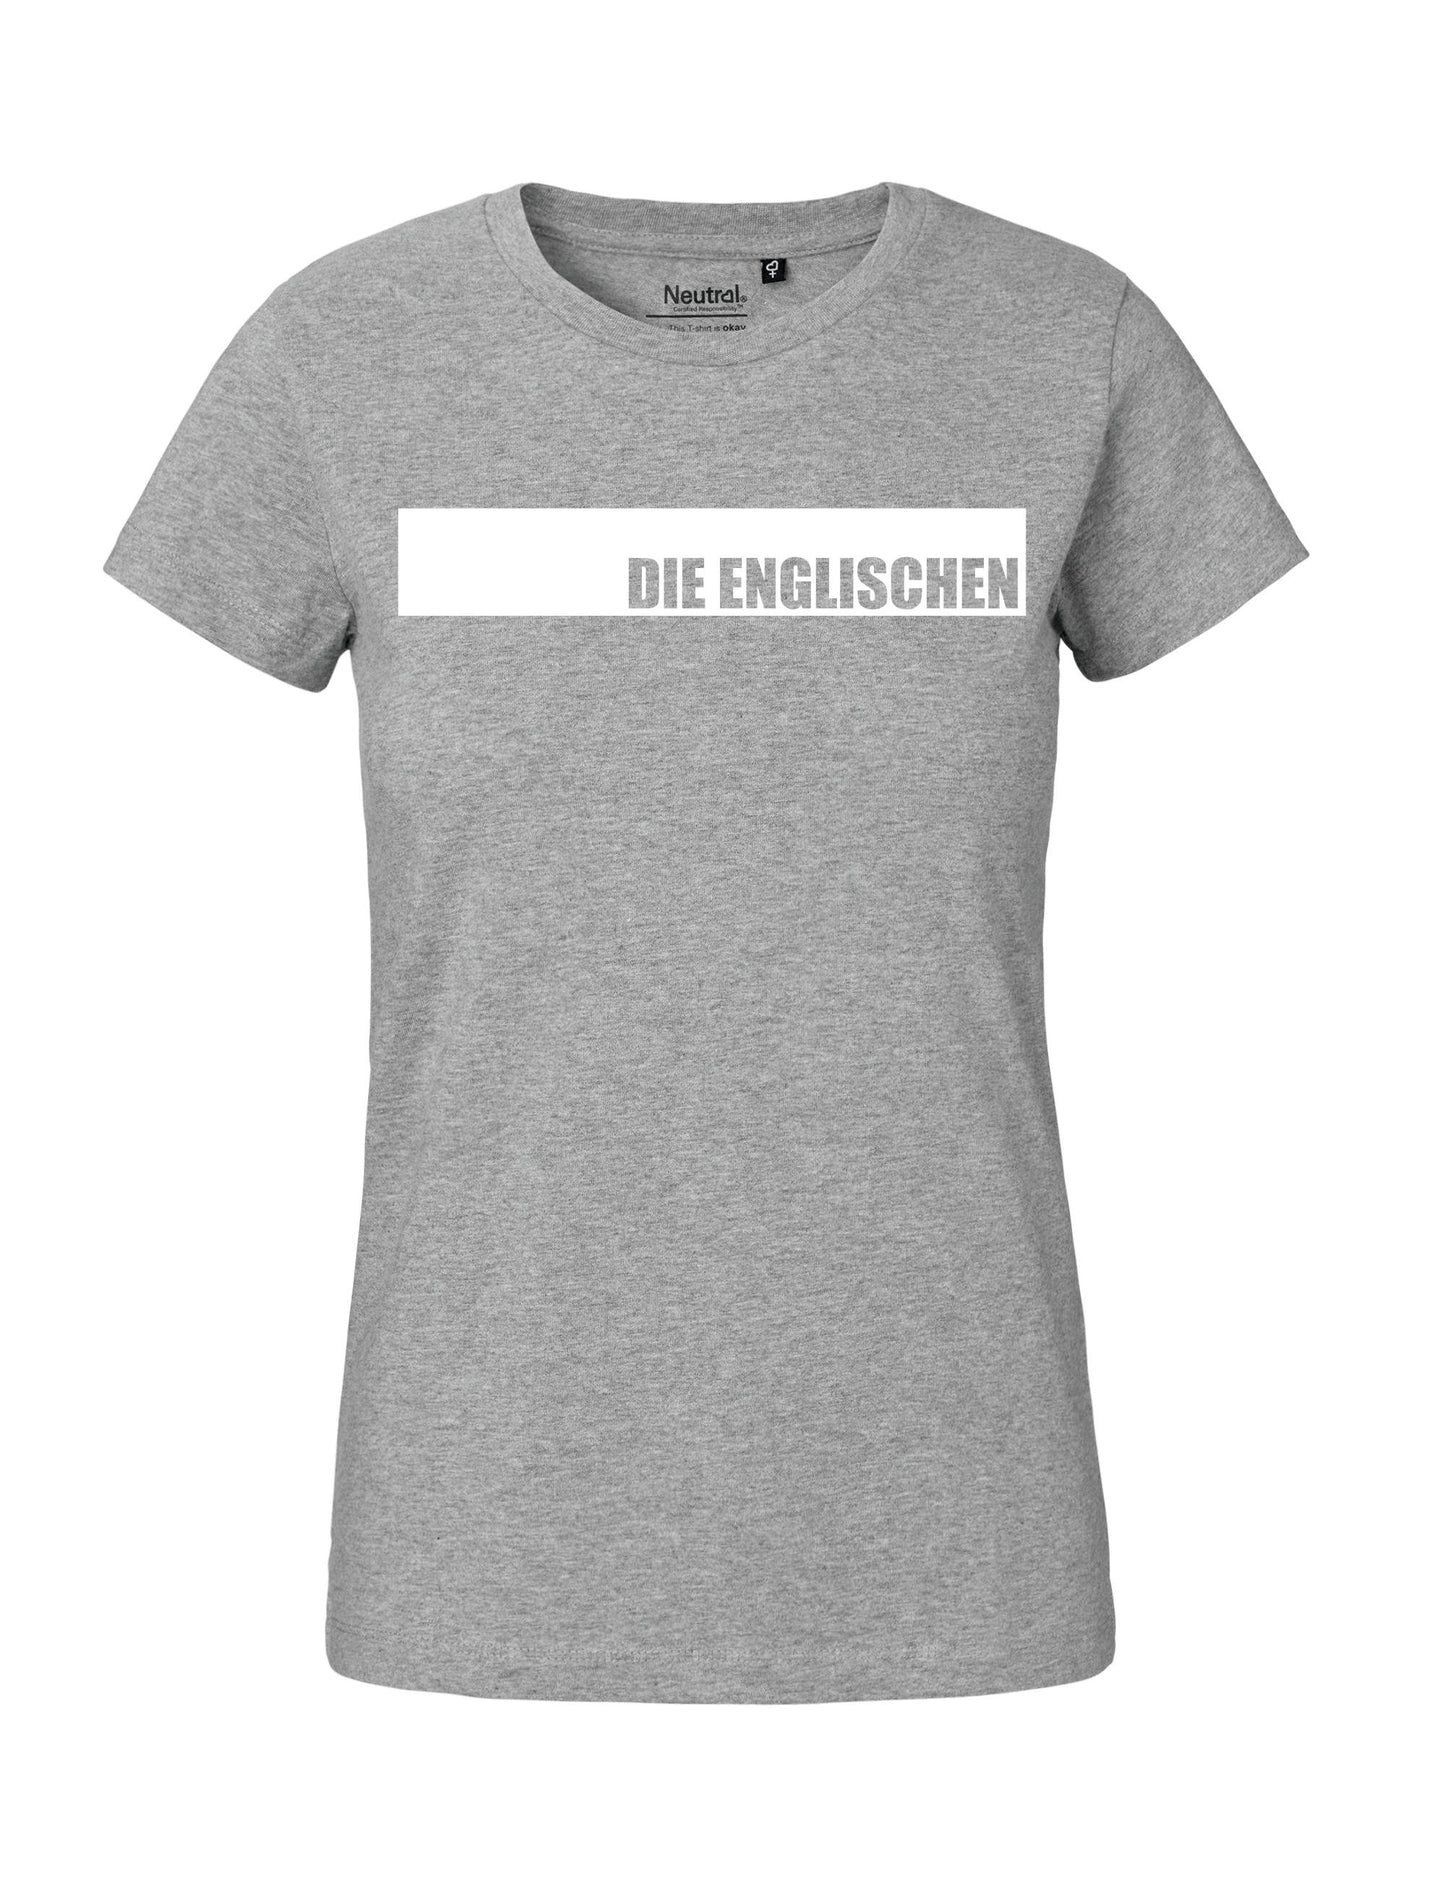 Shirt mit Brustprint "DIE ENGLISCHEN" - Damen